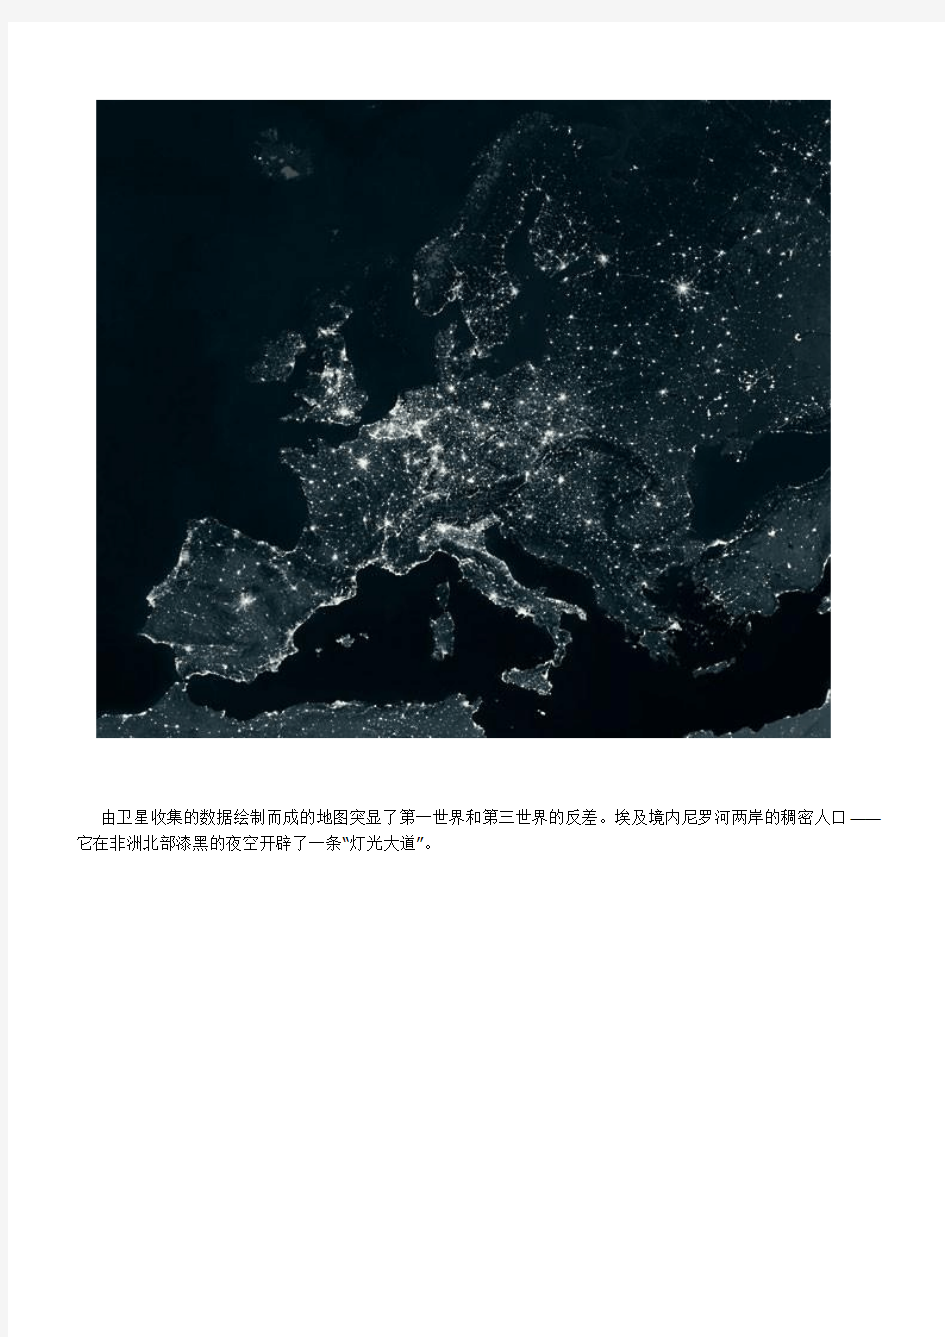 从地球夜景卫星图看全球能量分布